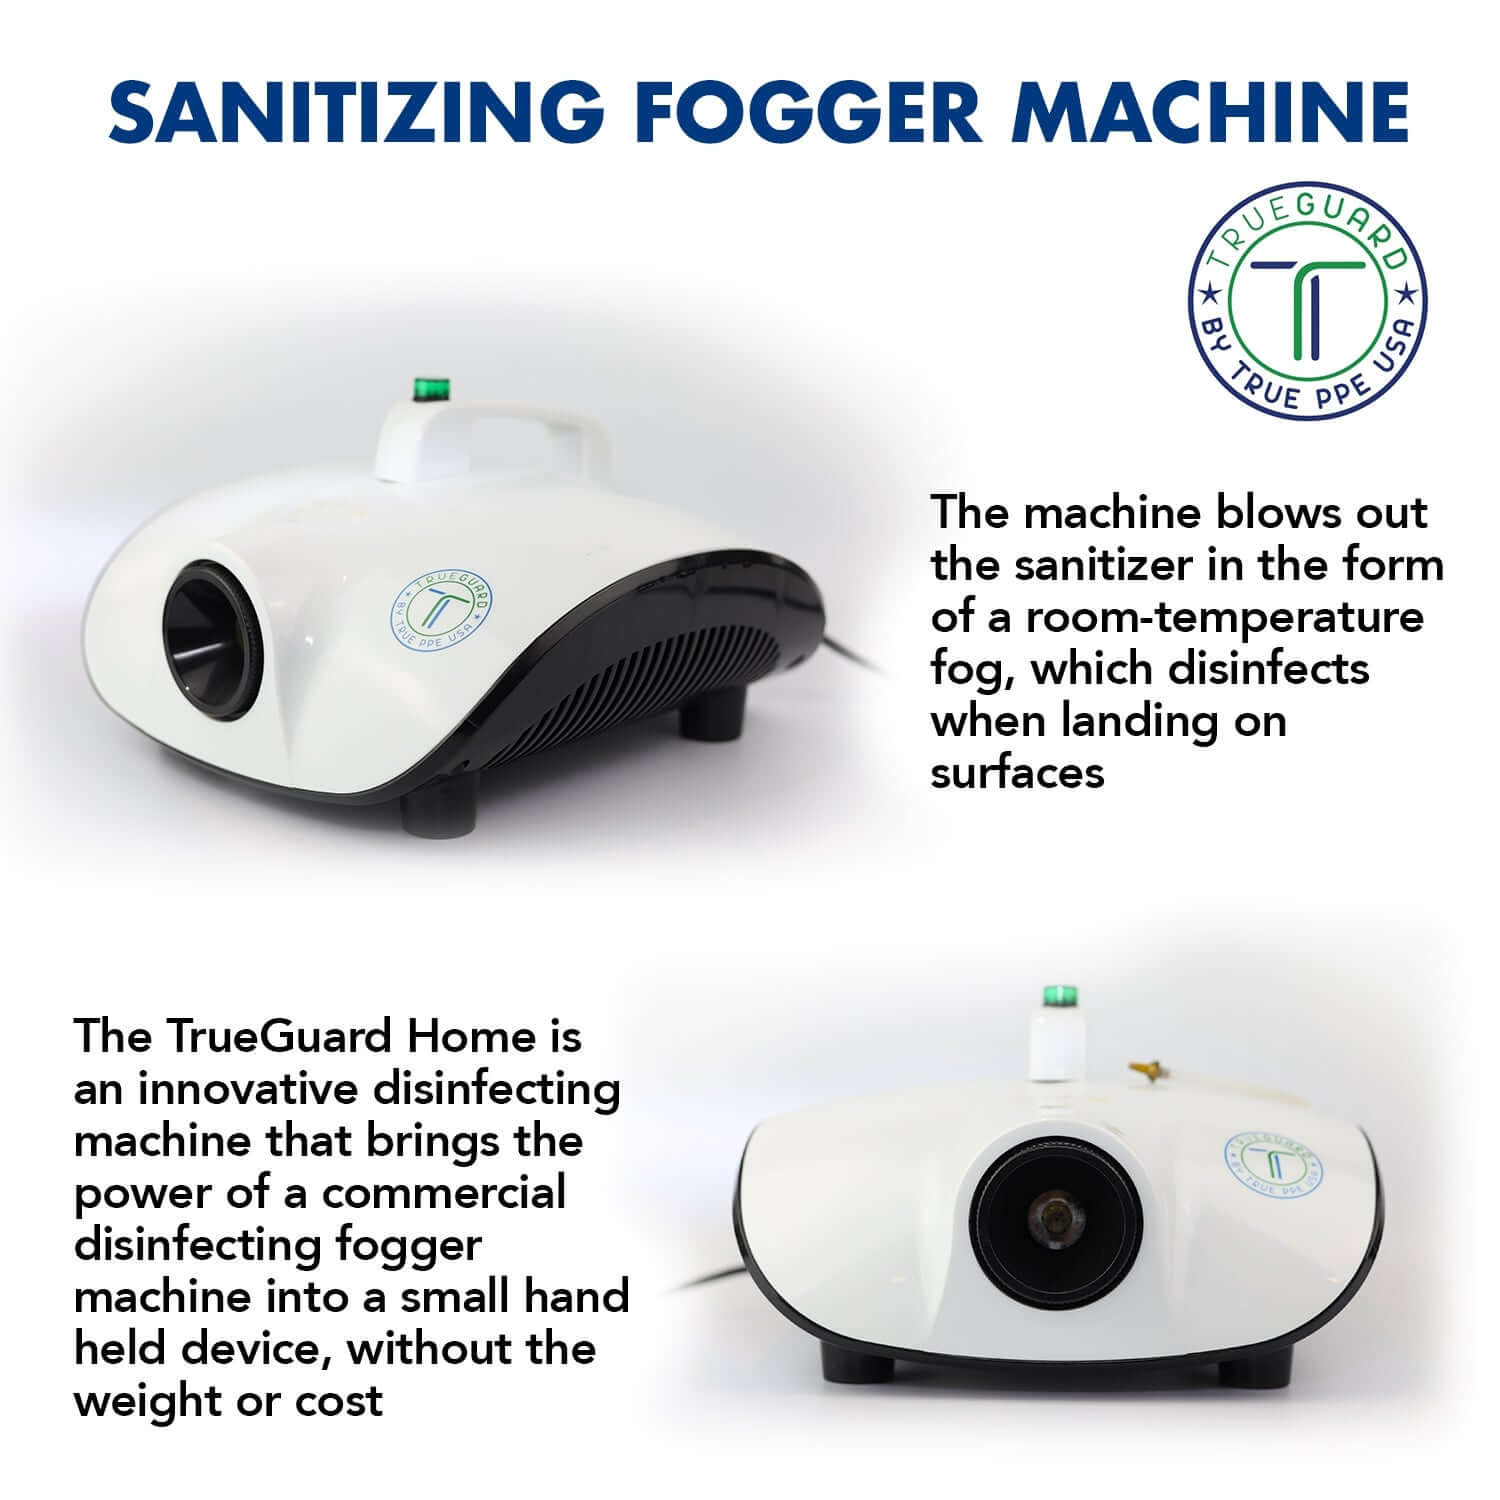 TrueGuard Home Disinfecting Fogging Machine